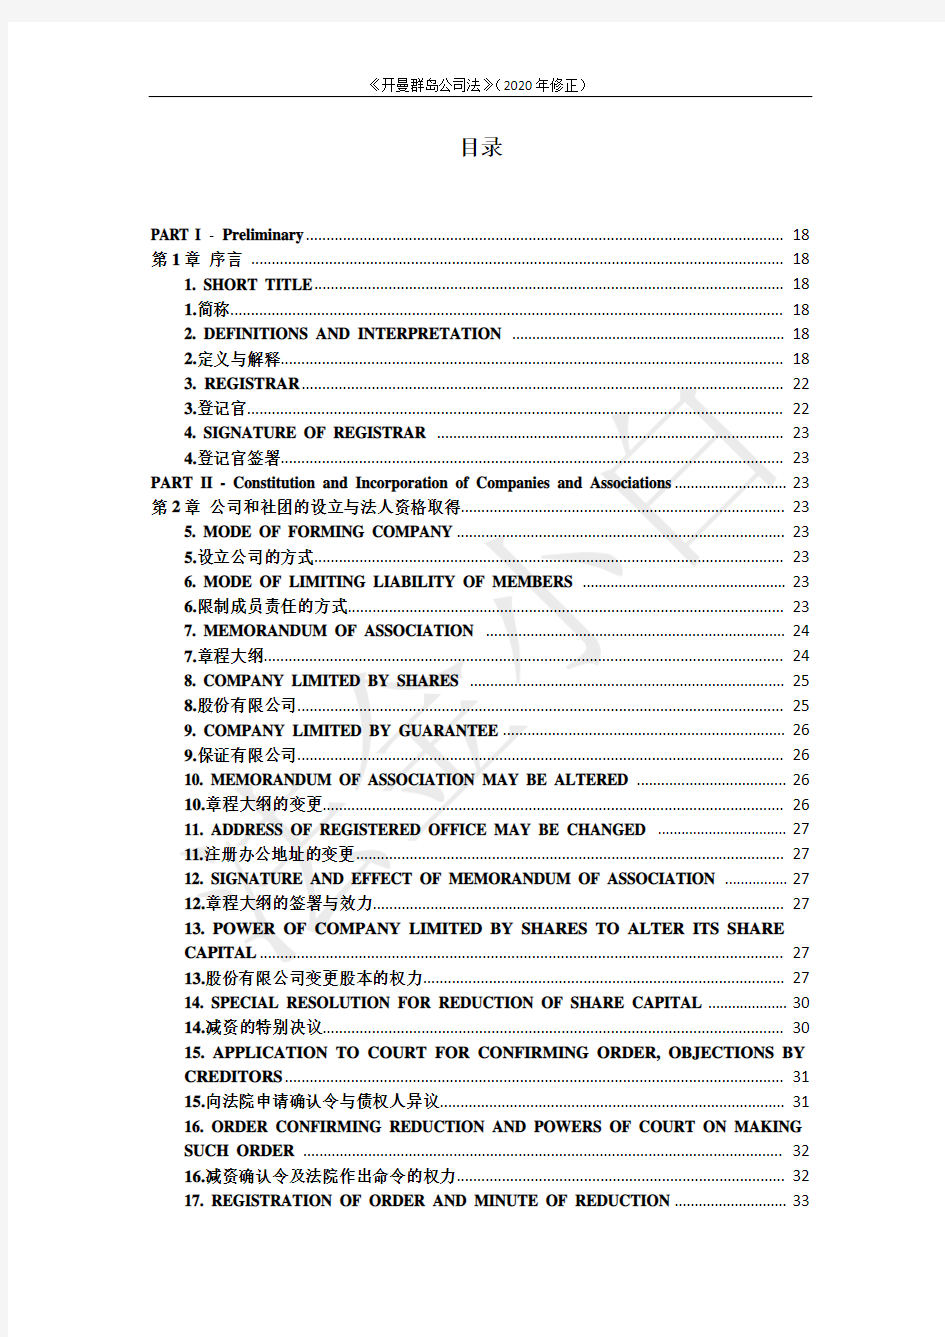 开曼群岛公司法(2020修正)_2020年4月_第1版